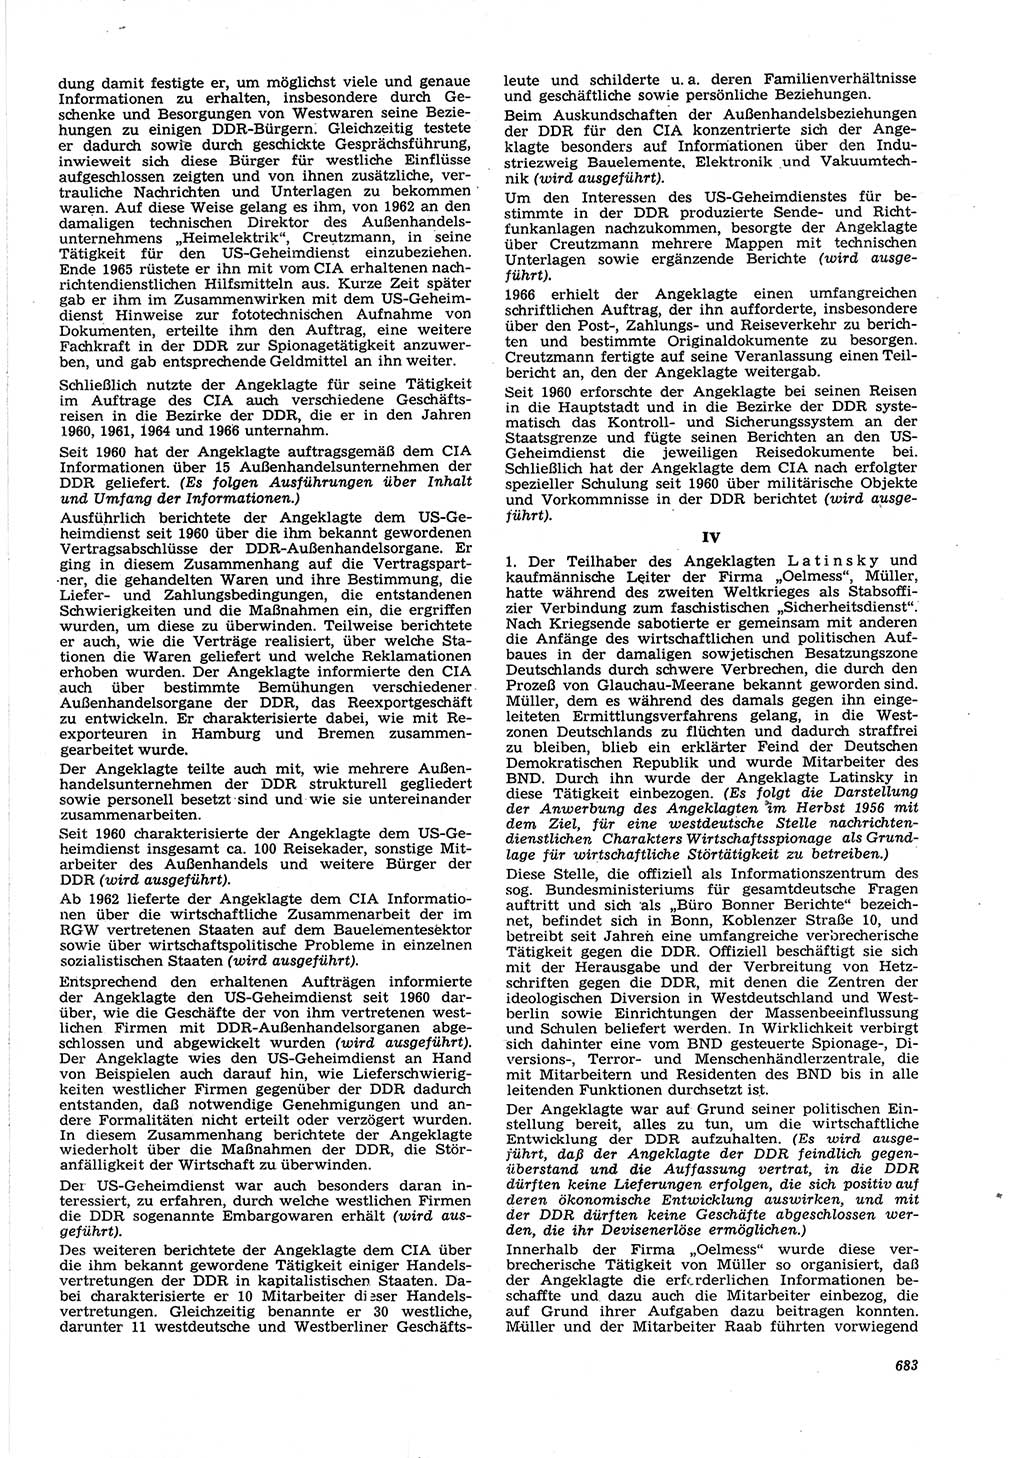 Neue Justiz (NJ), Zeitschrift für Recht und Rechtswissenschaft [Deutsche Demokratische Republik (DDR)], 21. Jahrgang 1967, Seite 683 (NJ DDR 1967, S. 683)